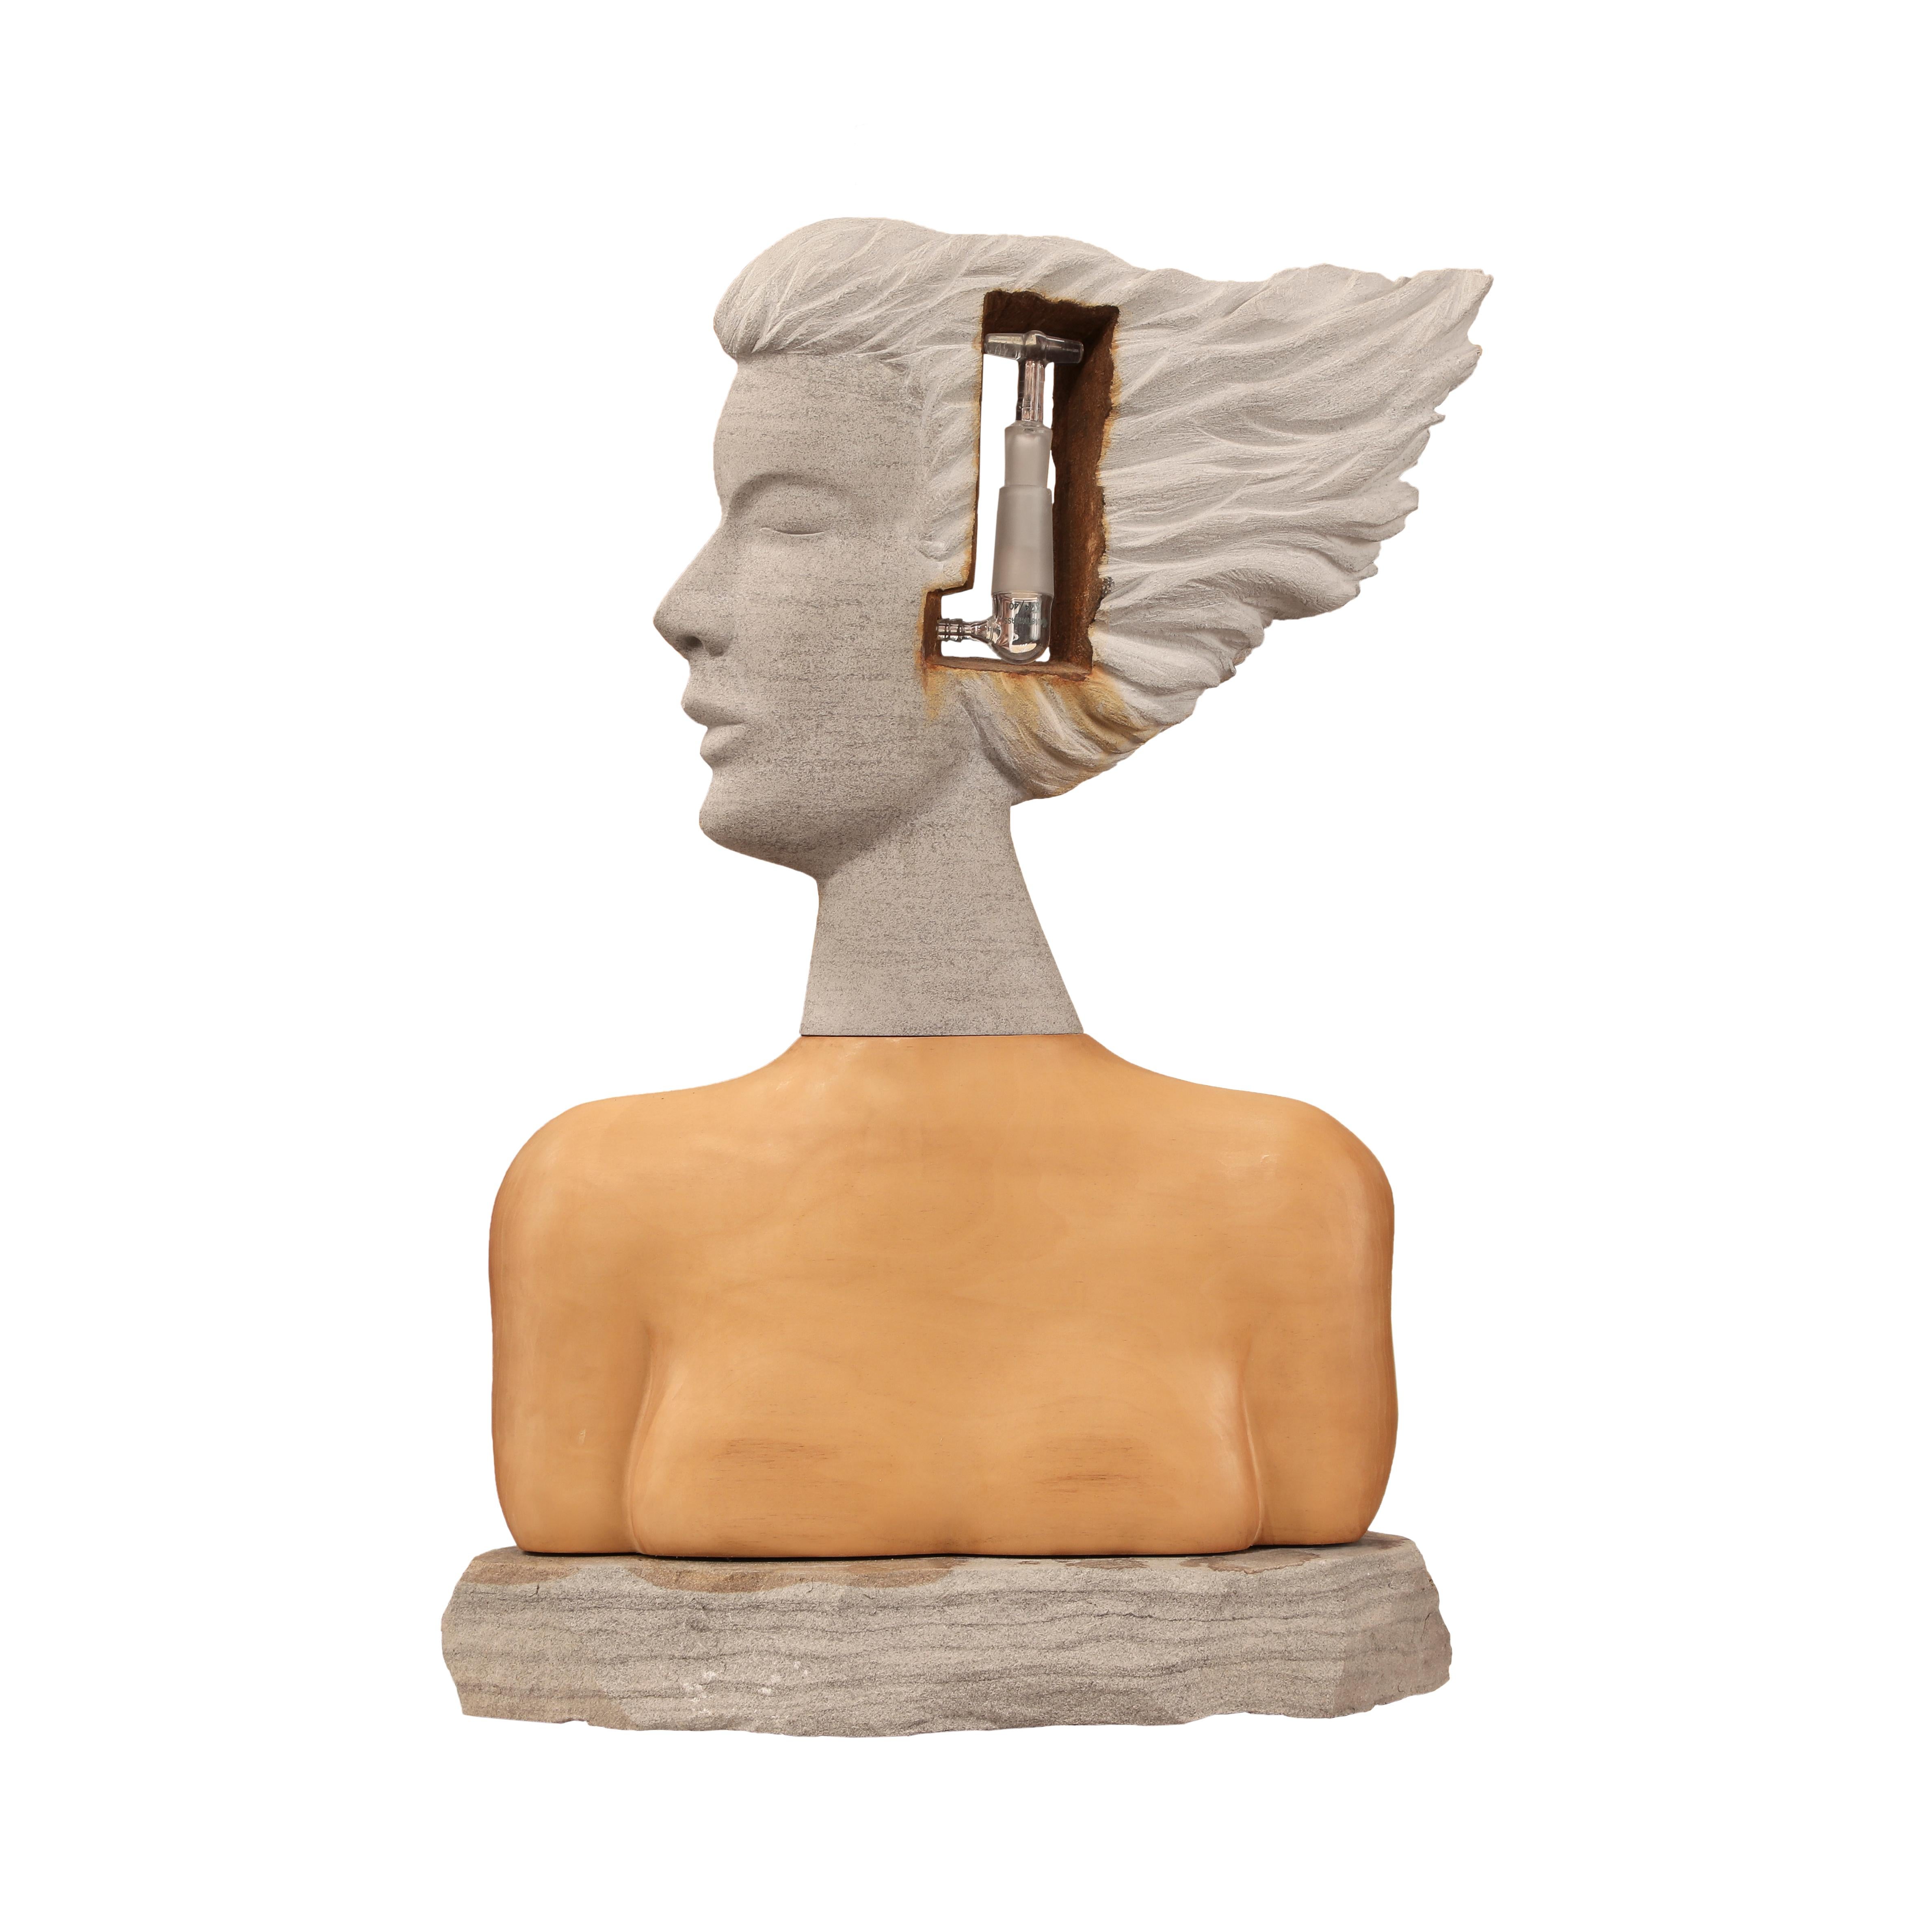 Jane Jaskevich Figurative Sculpture - The Decision